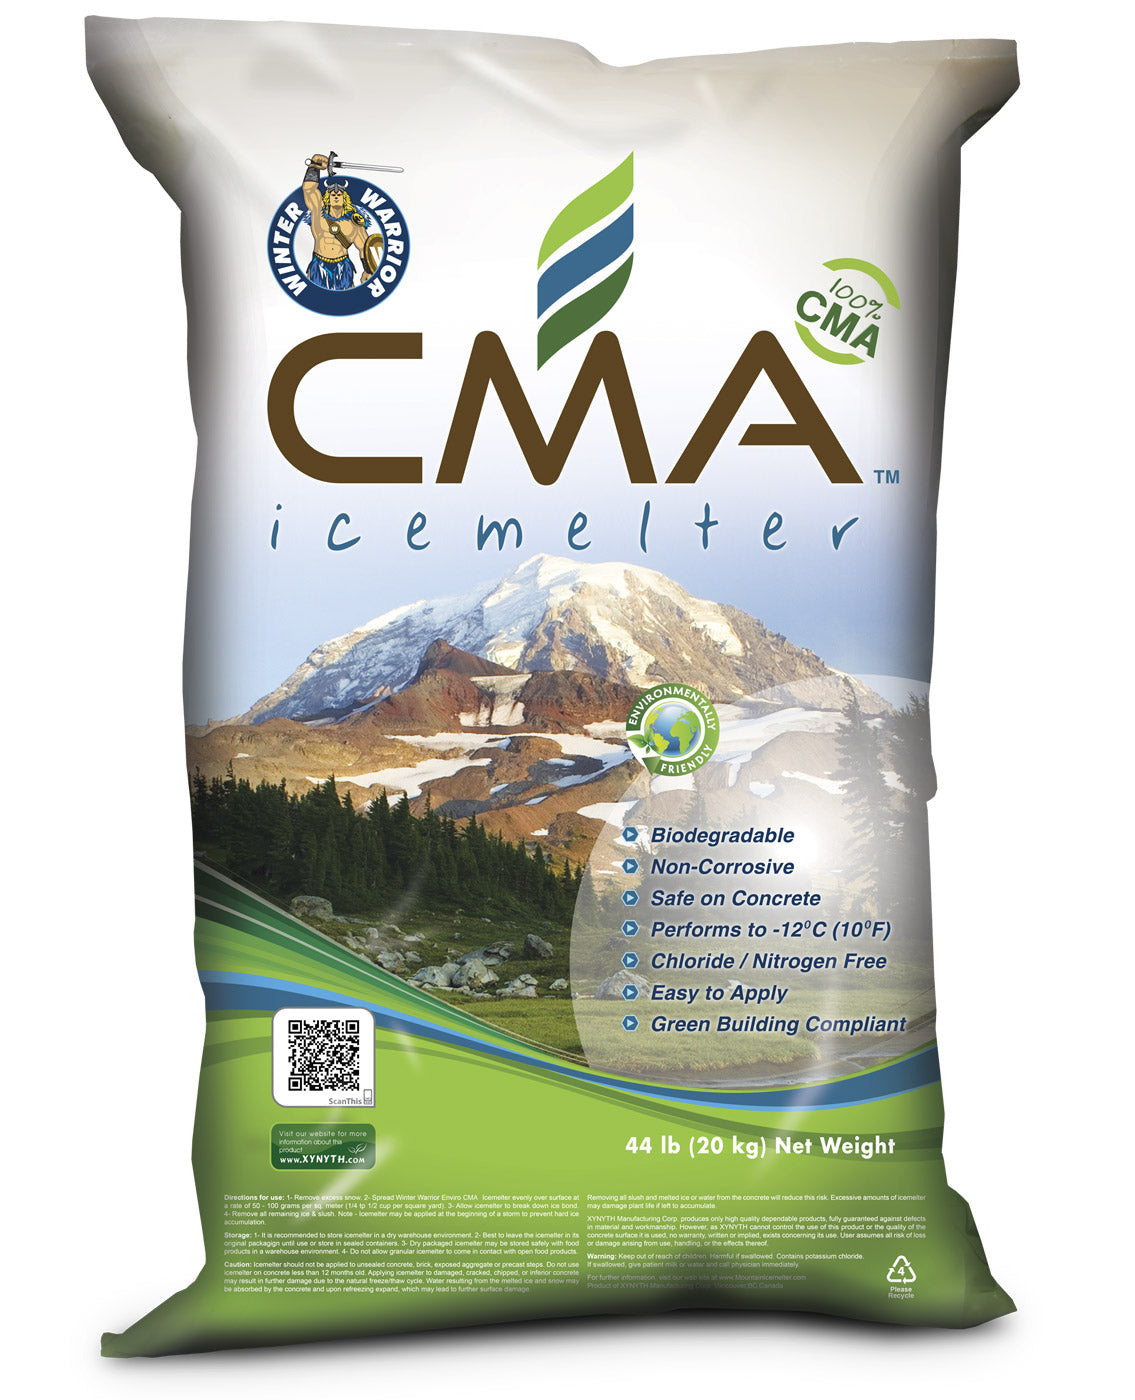 Winter Warrior CMA Calcium Magnesium Acetate Biodegradable Ice Melt in 44lb Bag